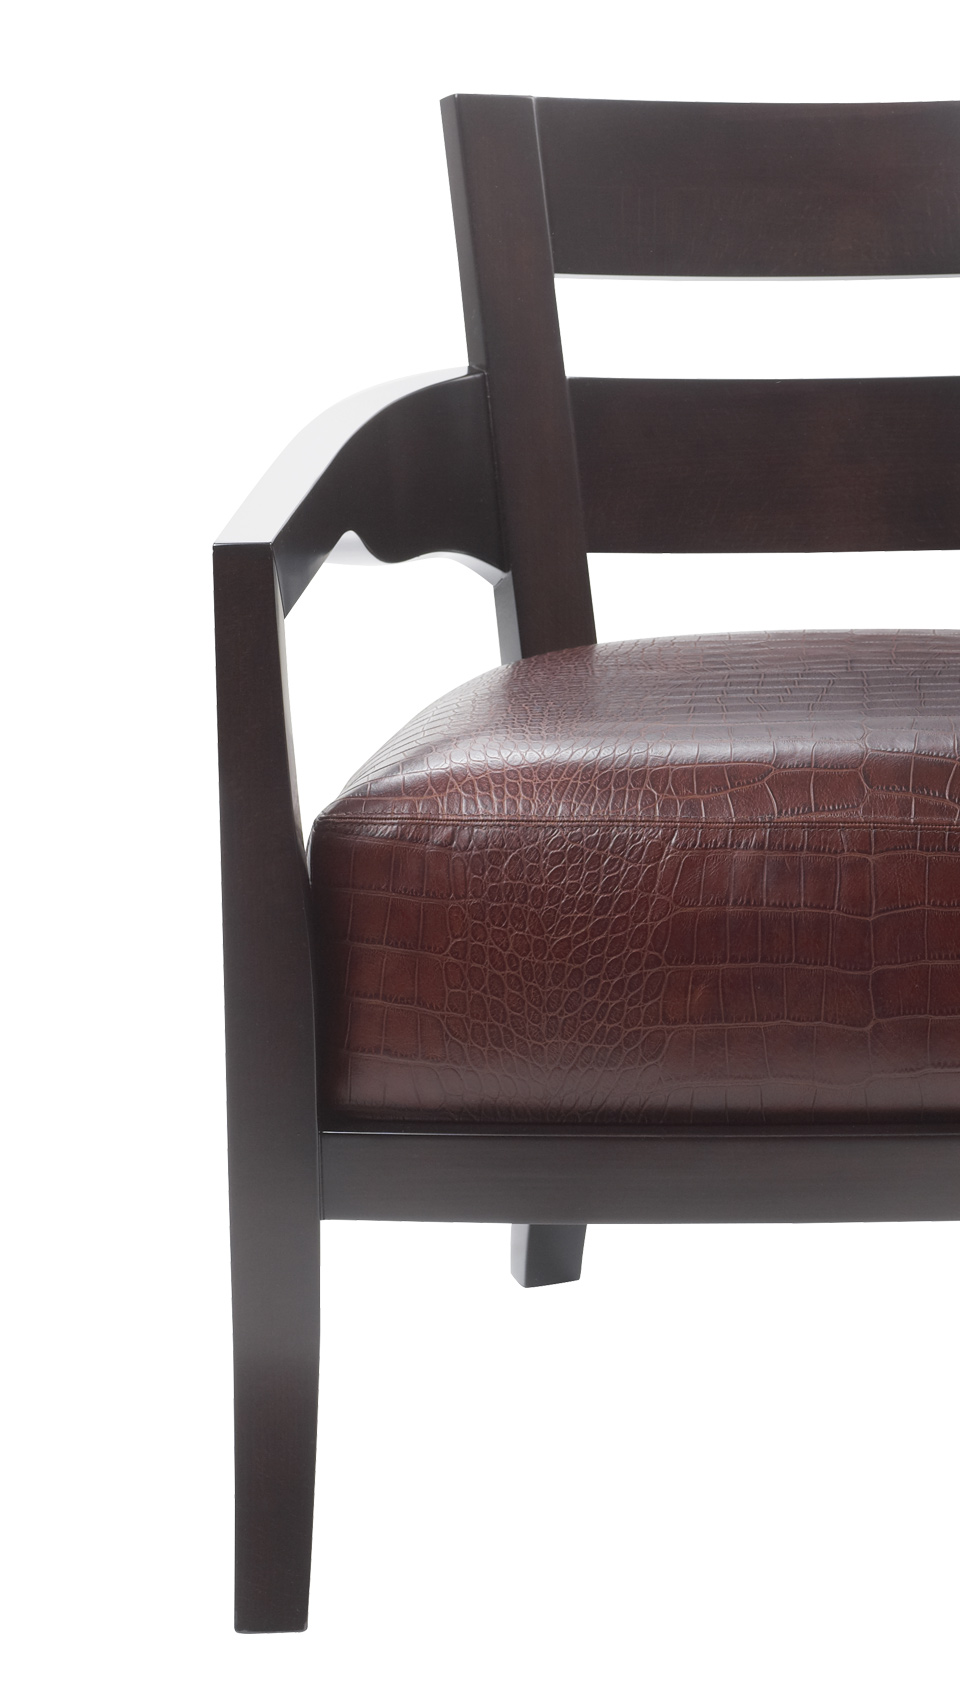 Détail d’Africa, fauteuil en bois avec revêtement en tissu ou cuir. Ce meuble figure dans le catalogue Promemoria | Promemoria